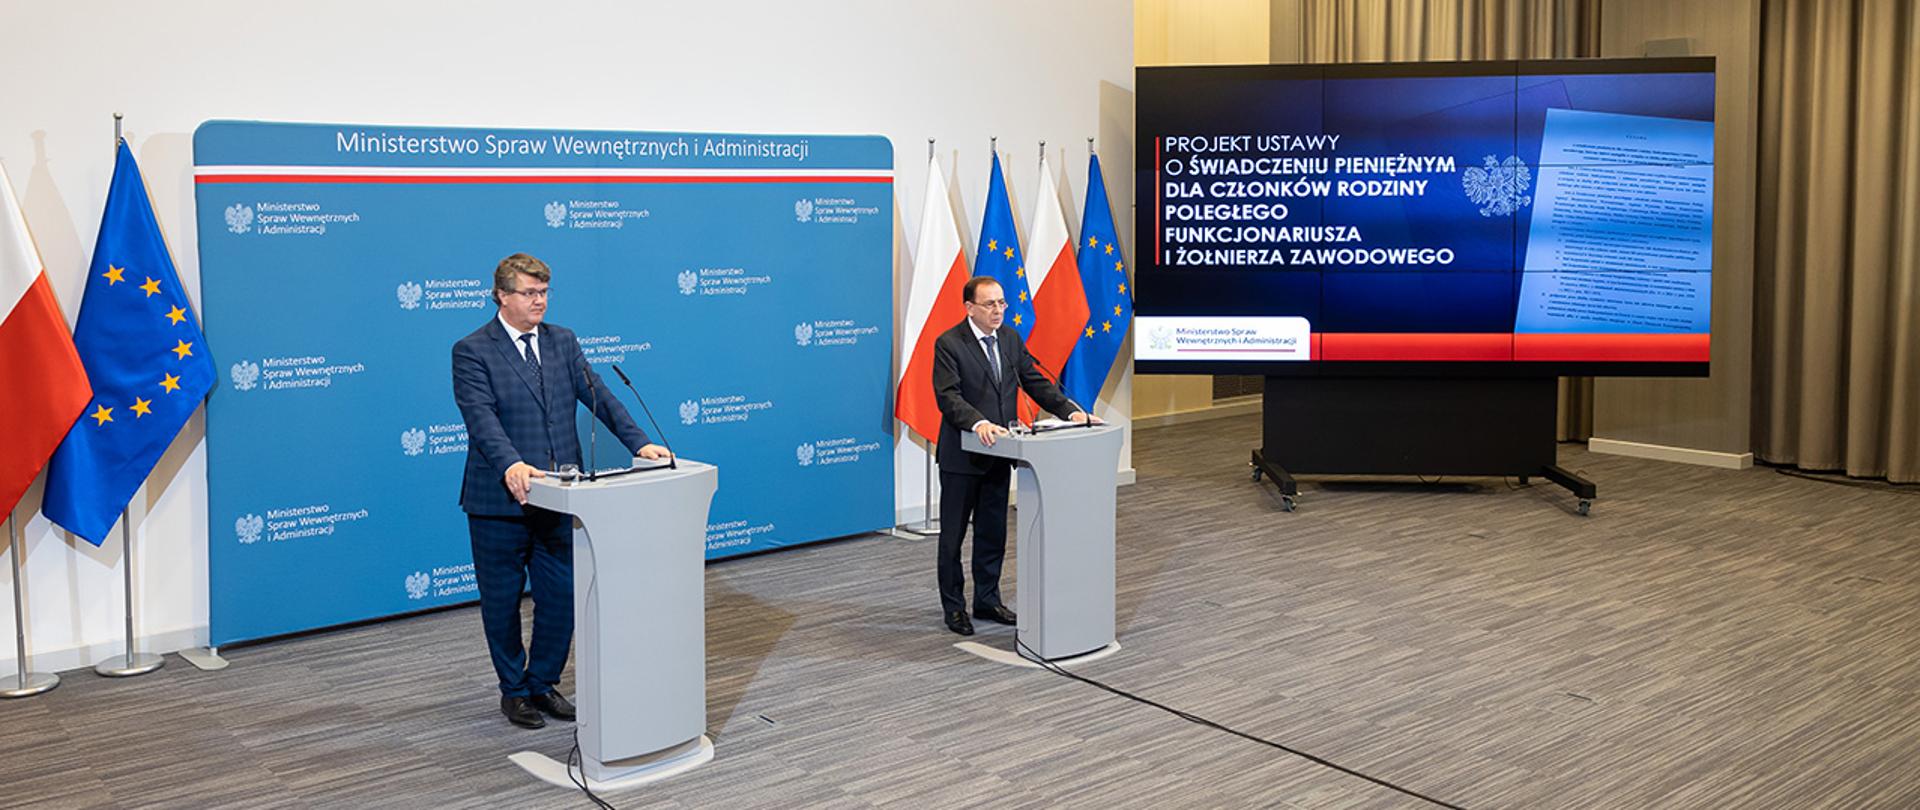 Na zdjęciu widać ministra Mariusza Kamińskiego i wiceministra Macieja Wąsika w trakcie konferencji prasowej stojących za mównicami. 